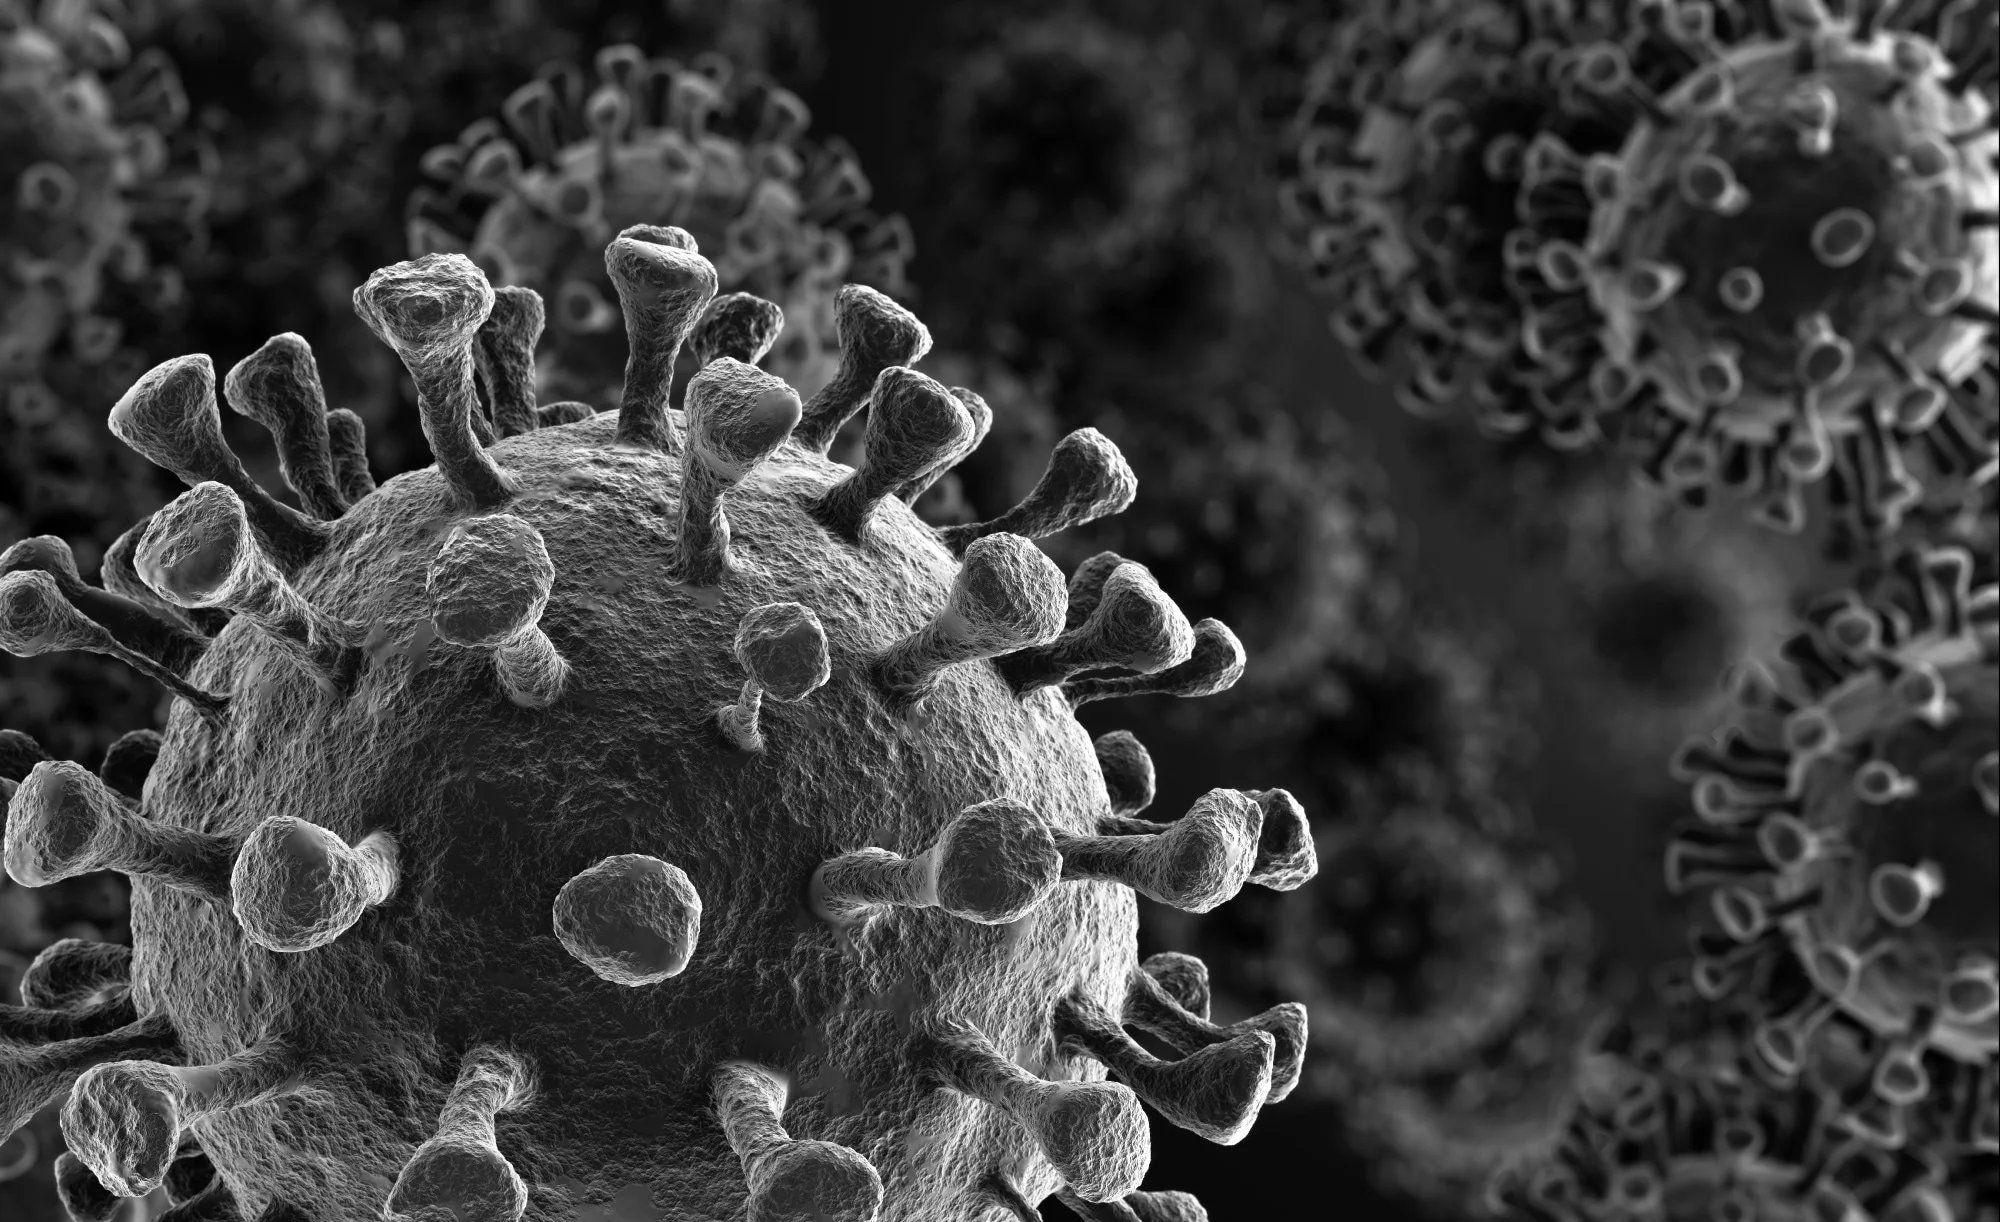 Yeni Araştırma, COVID-19 Virüsünün Kanser Riskini Artırabileceğini Ortaya Koydu